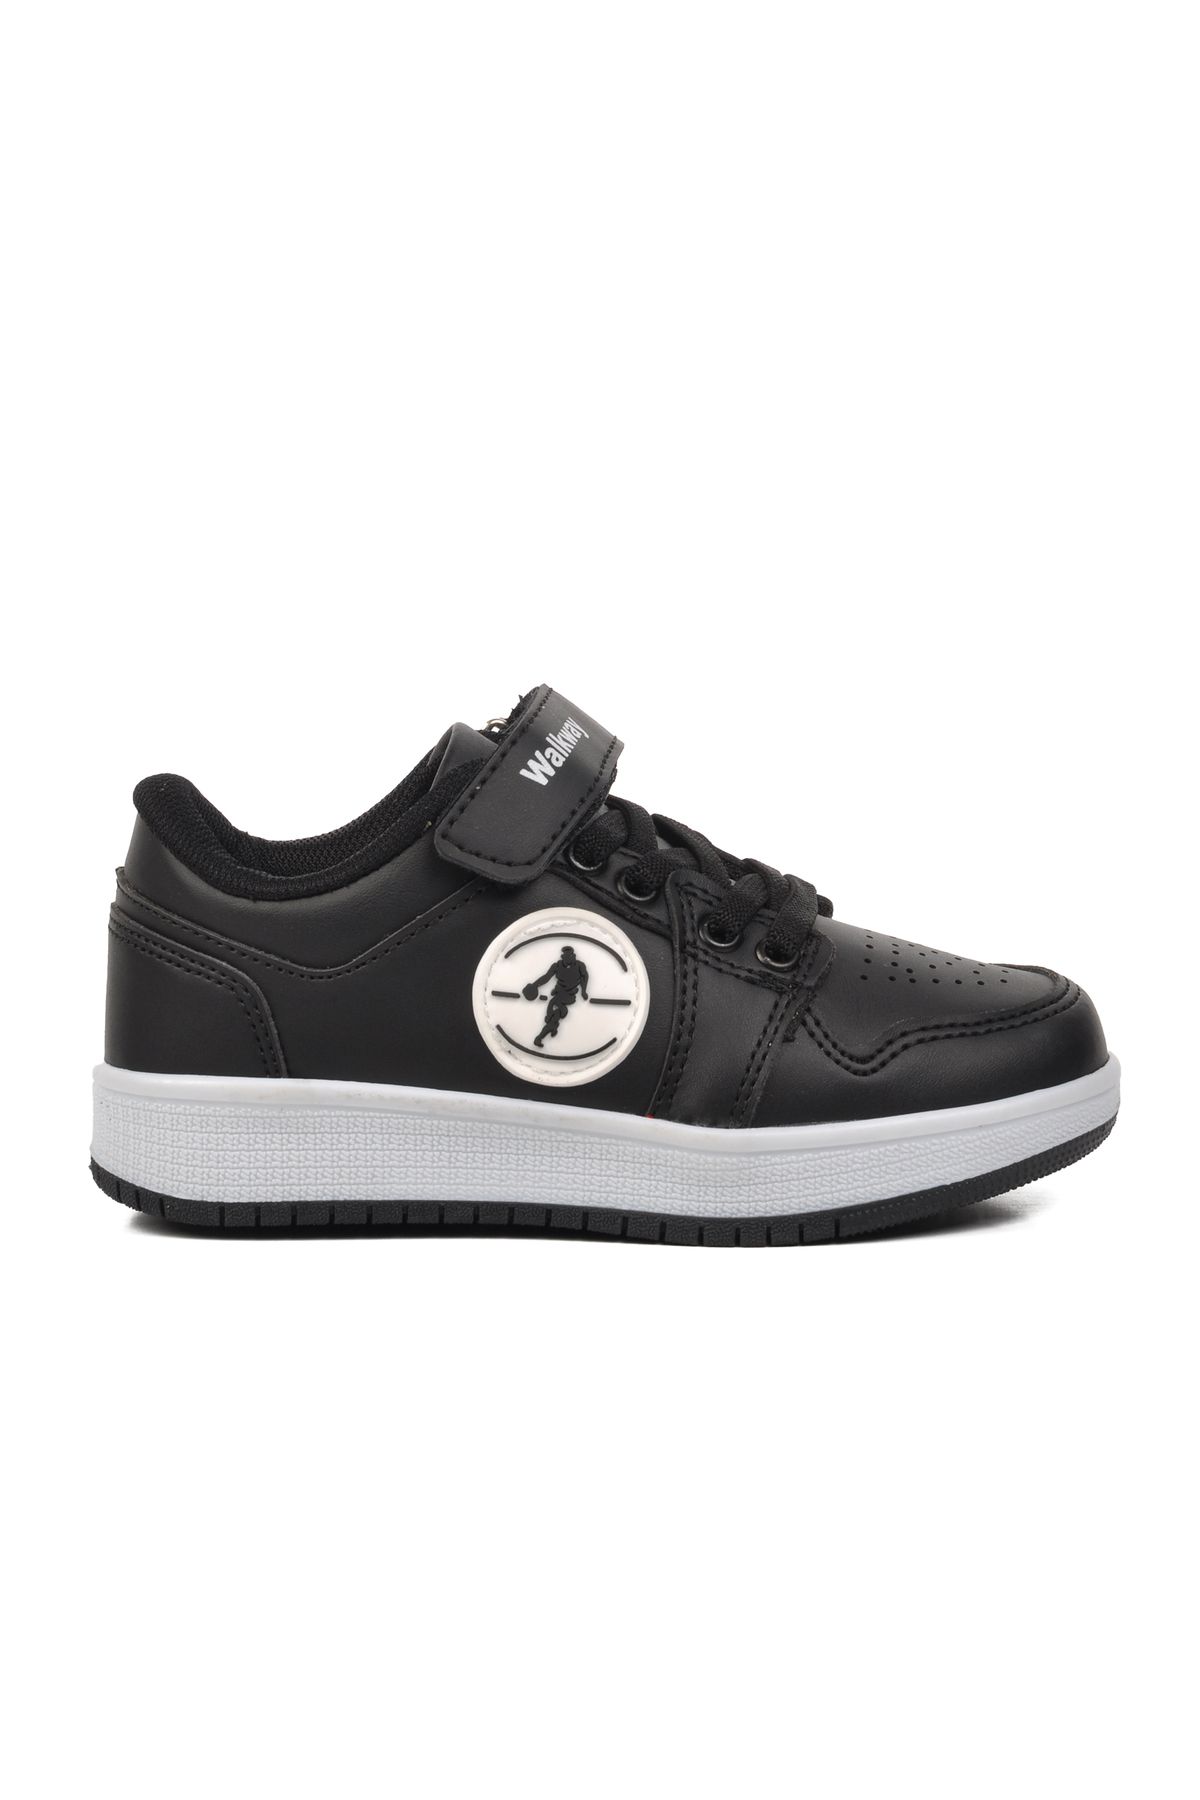 WALKWAY Sloga-P Siyah-Siyah-Beyaz Çocuk Spor Ayakkabı